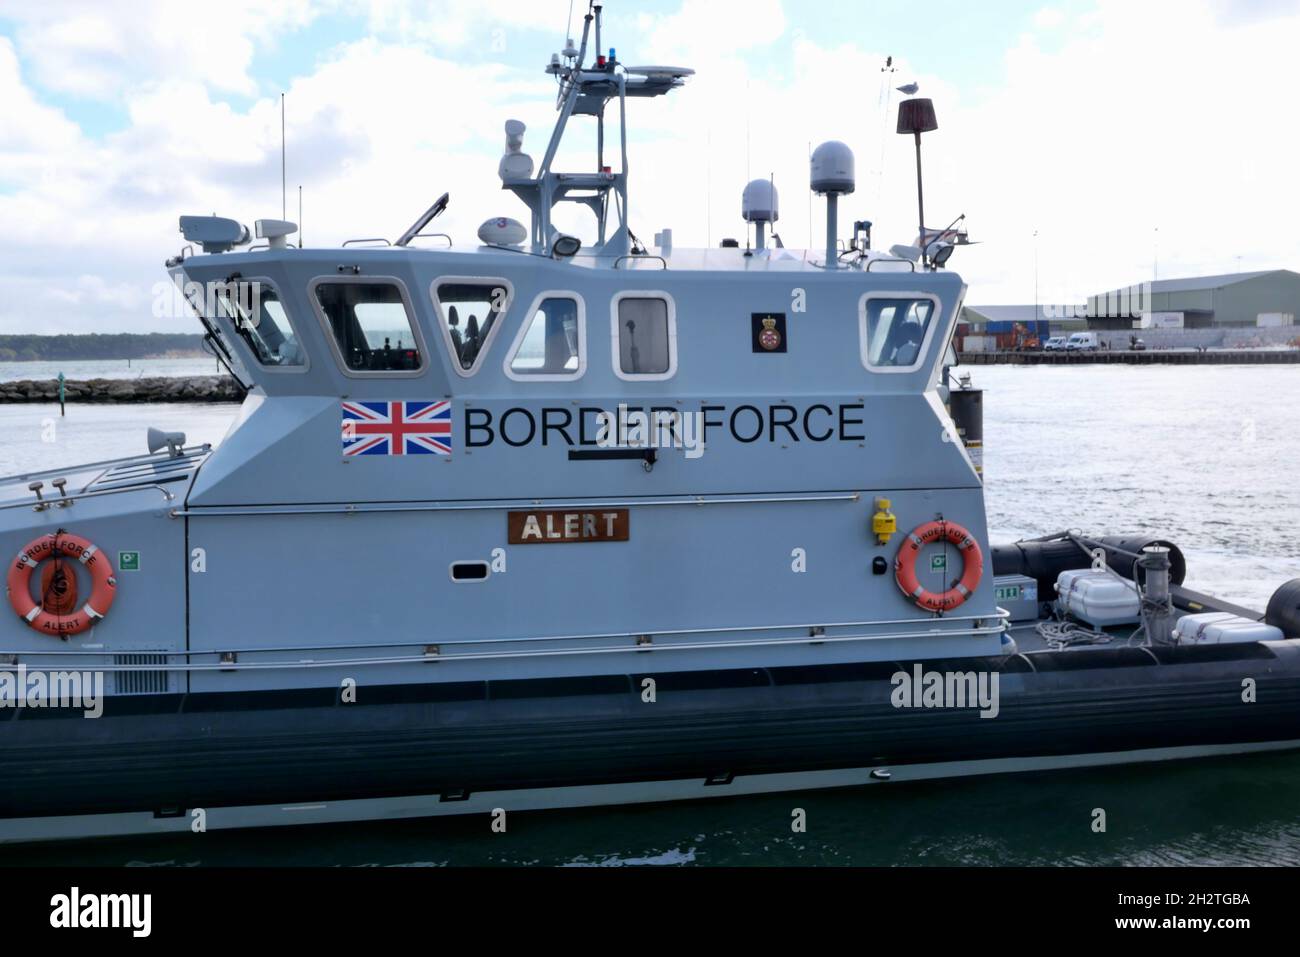 10 October 2021 - Poole, UK: Border force coastal protection vessel Stock Photo